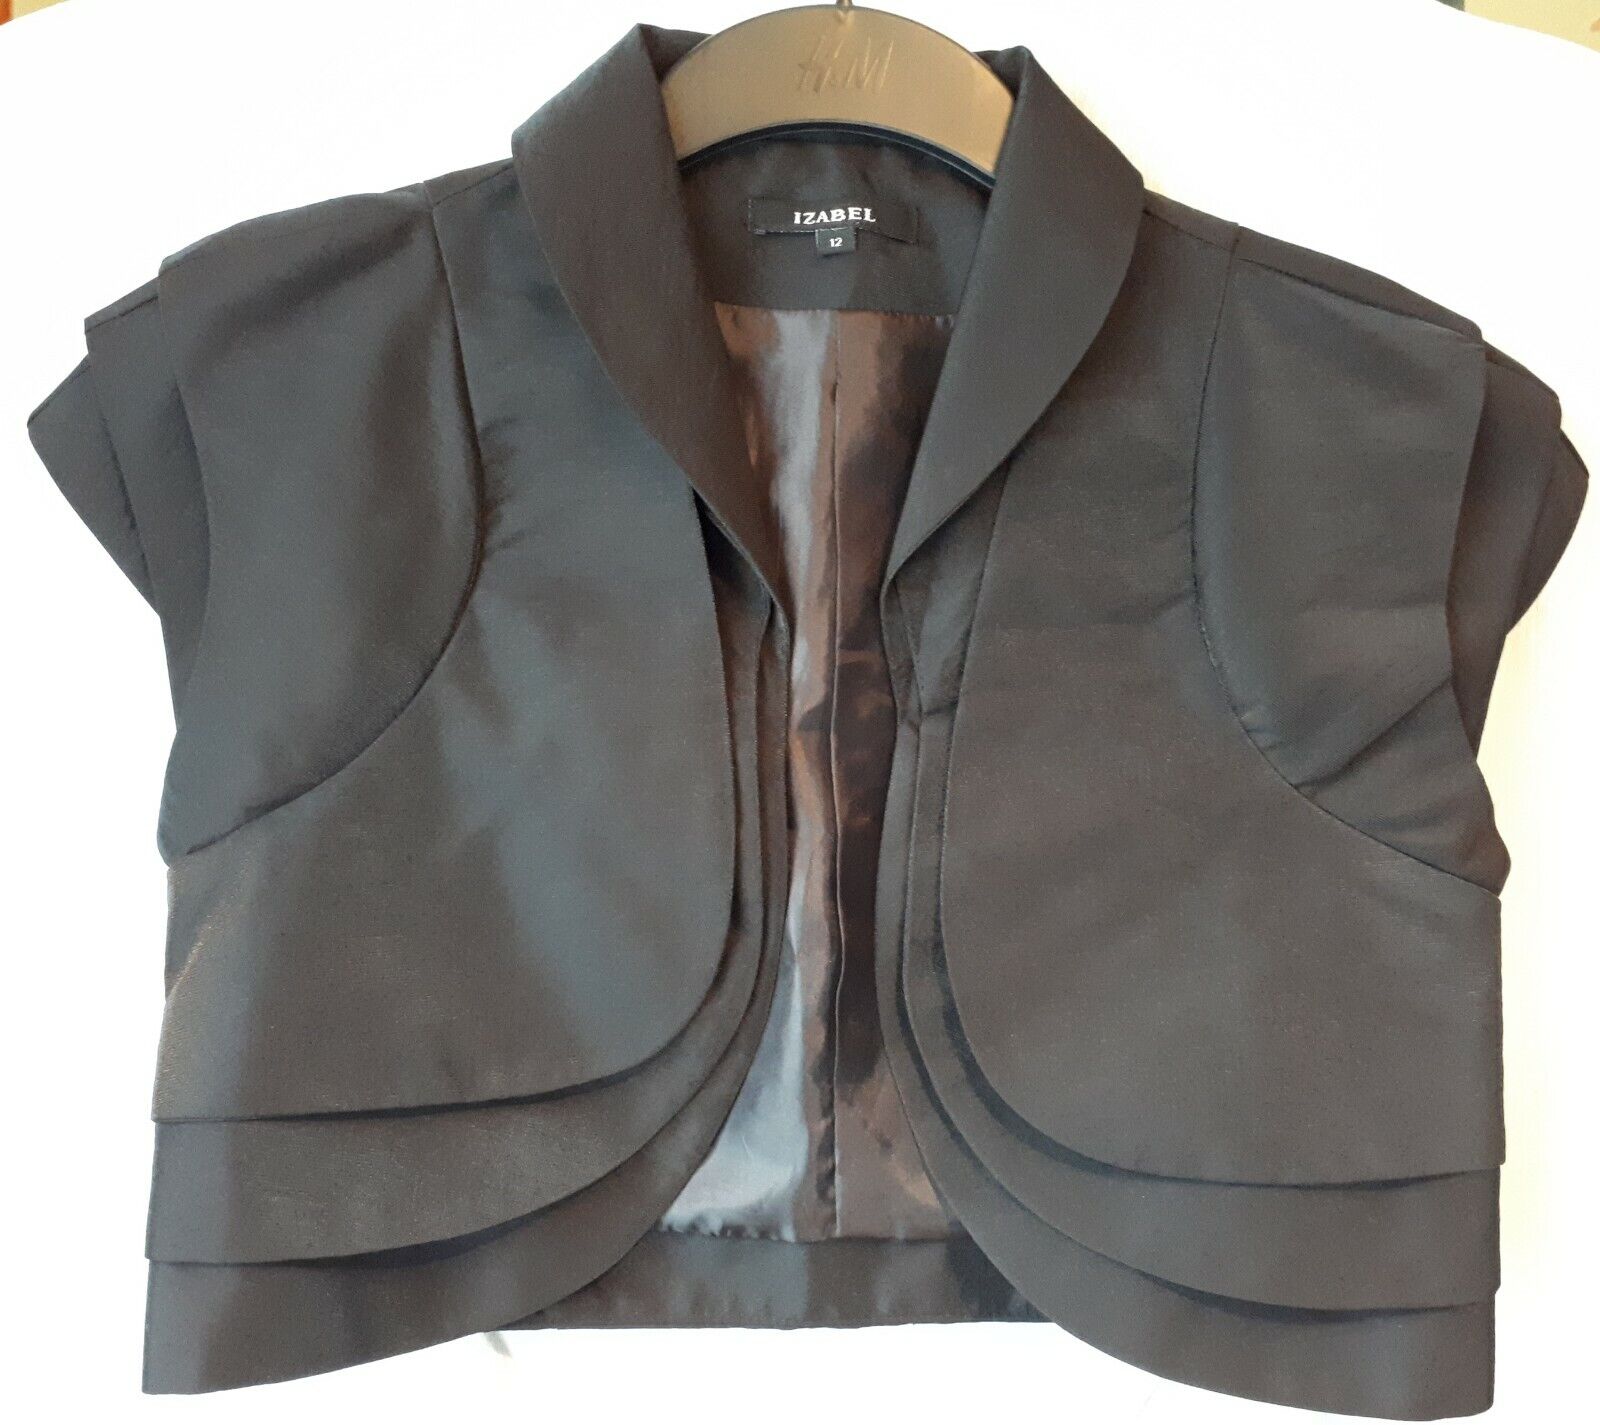 Smart evening cropped black bolero jacket by Izabel size UK 12 u